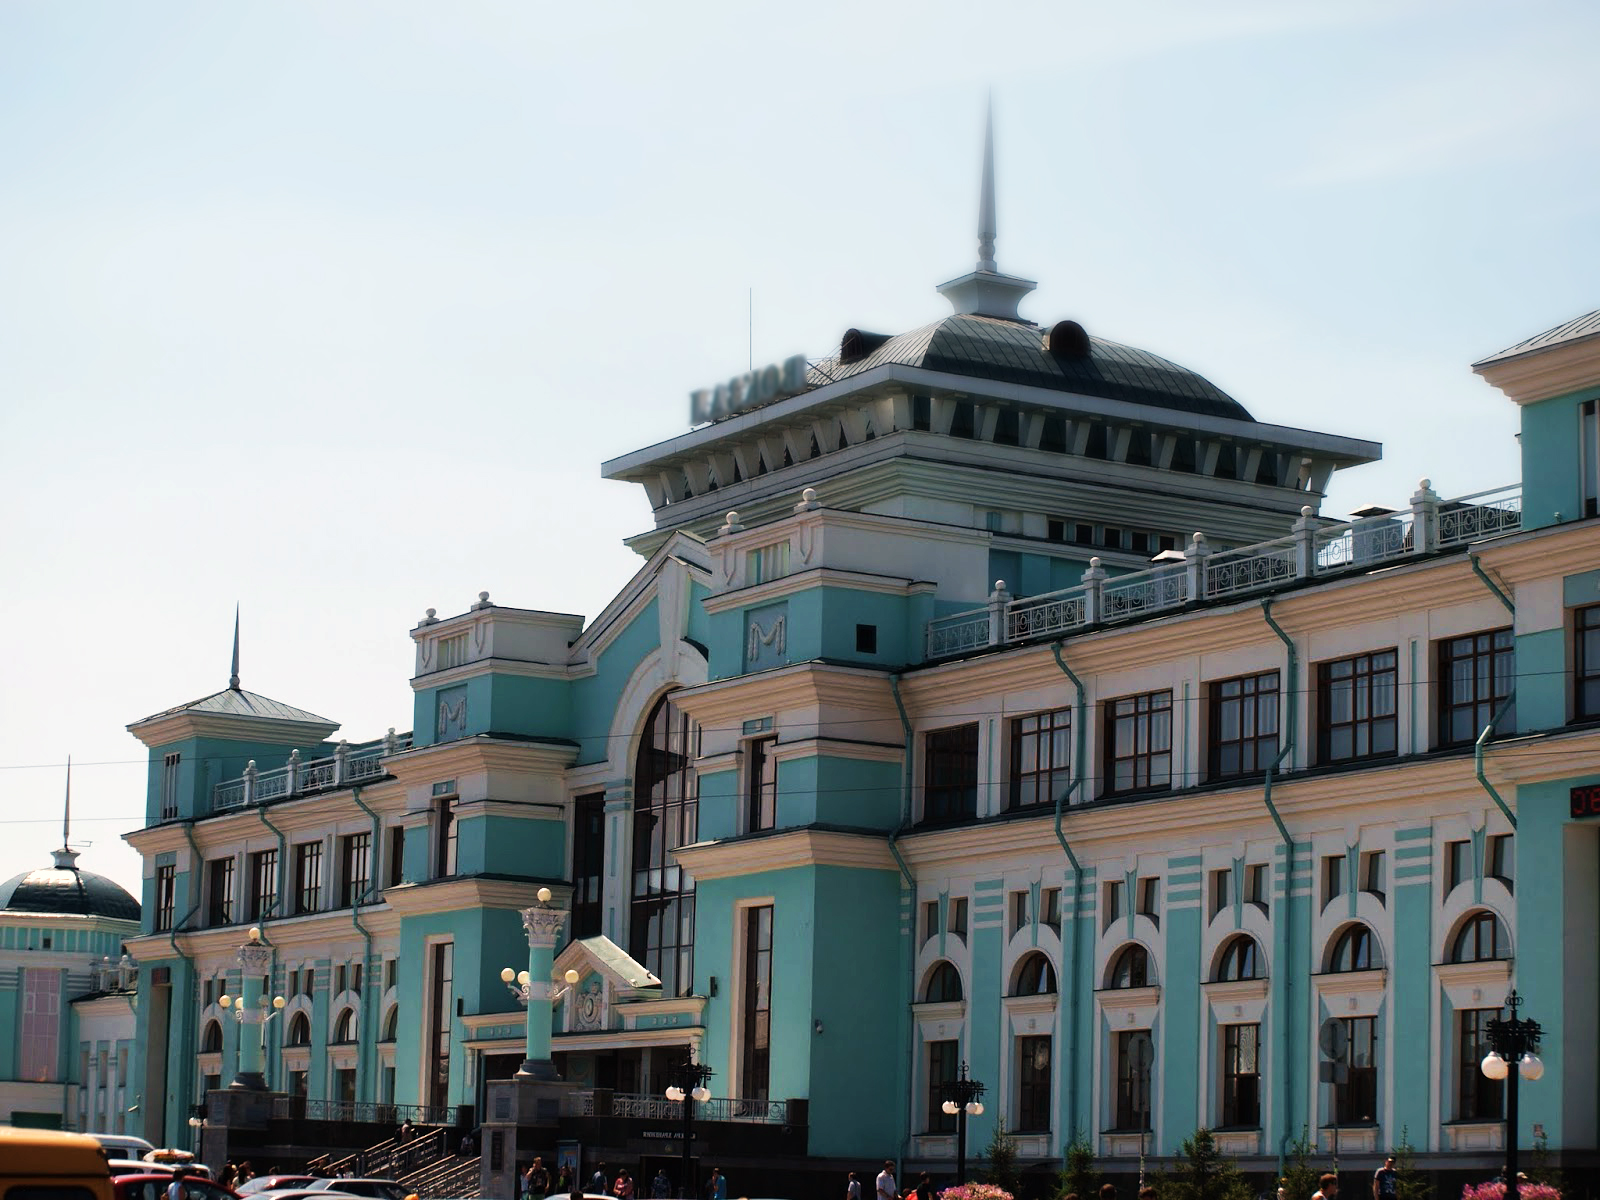 железнодорожный вокзал в омске